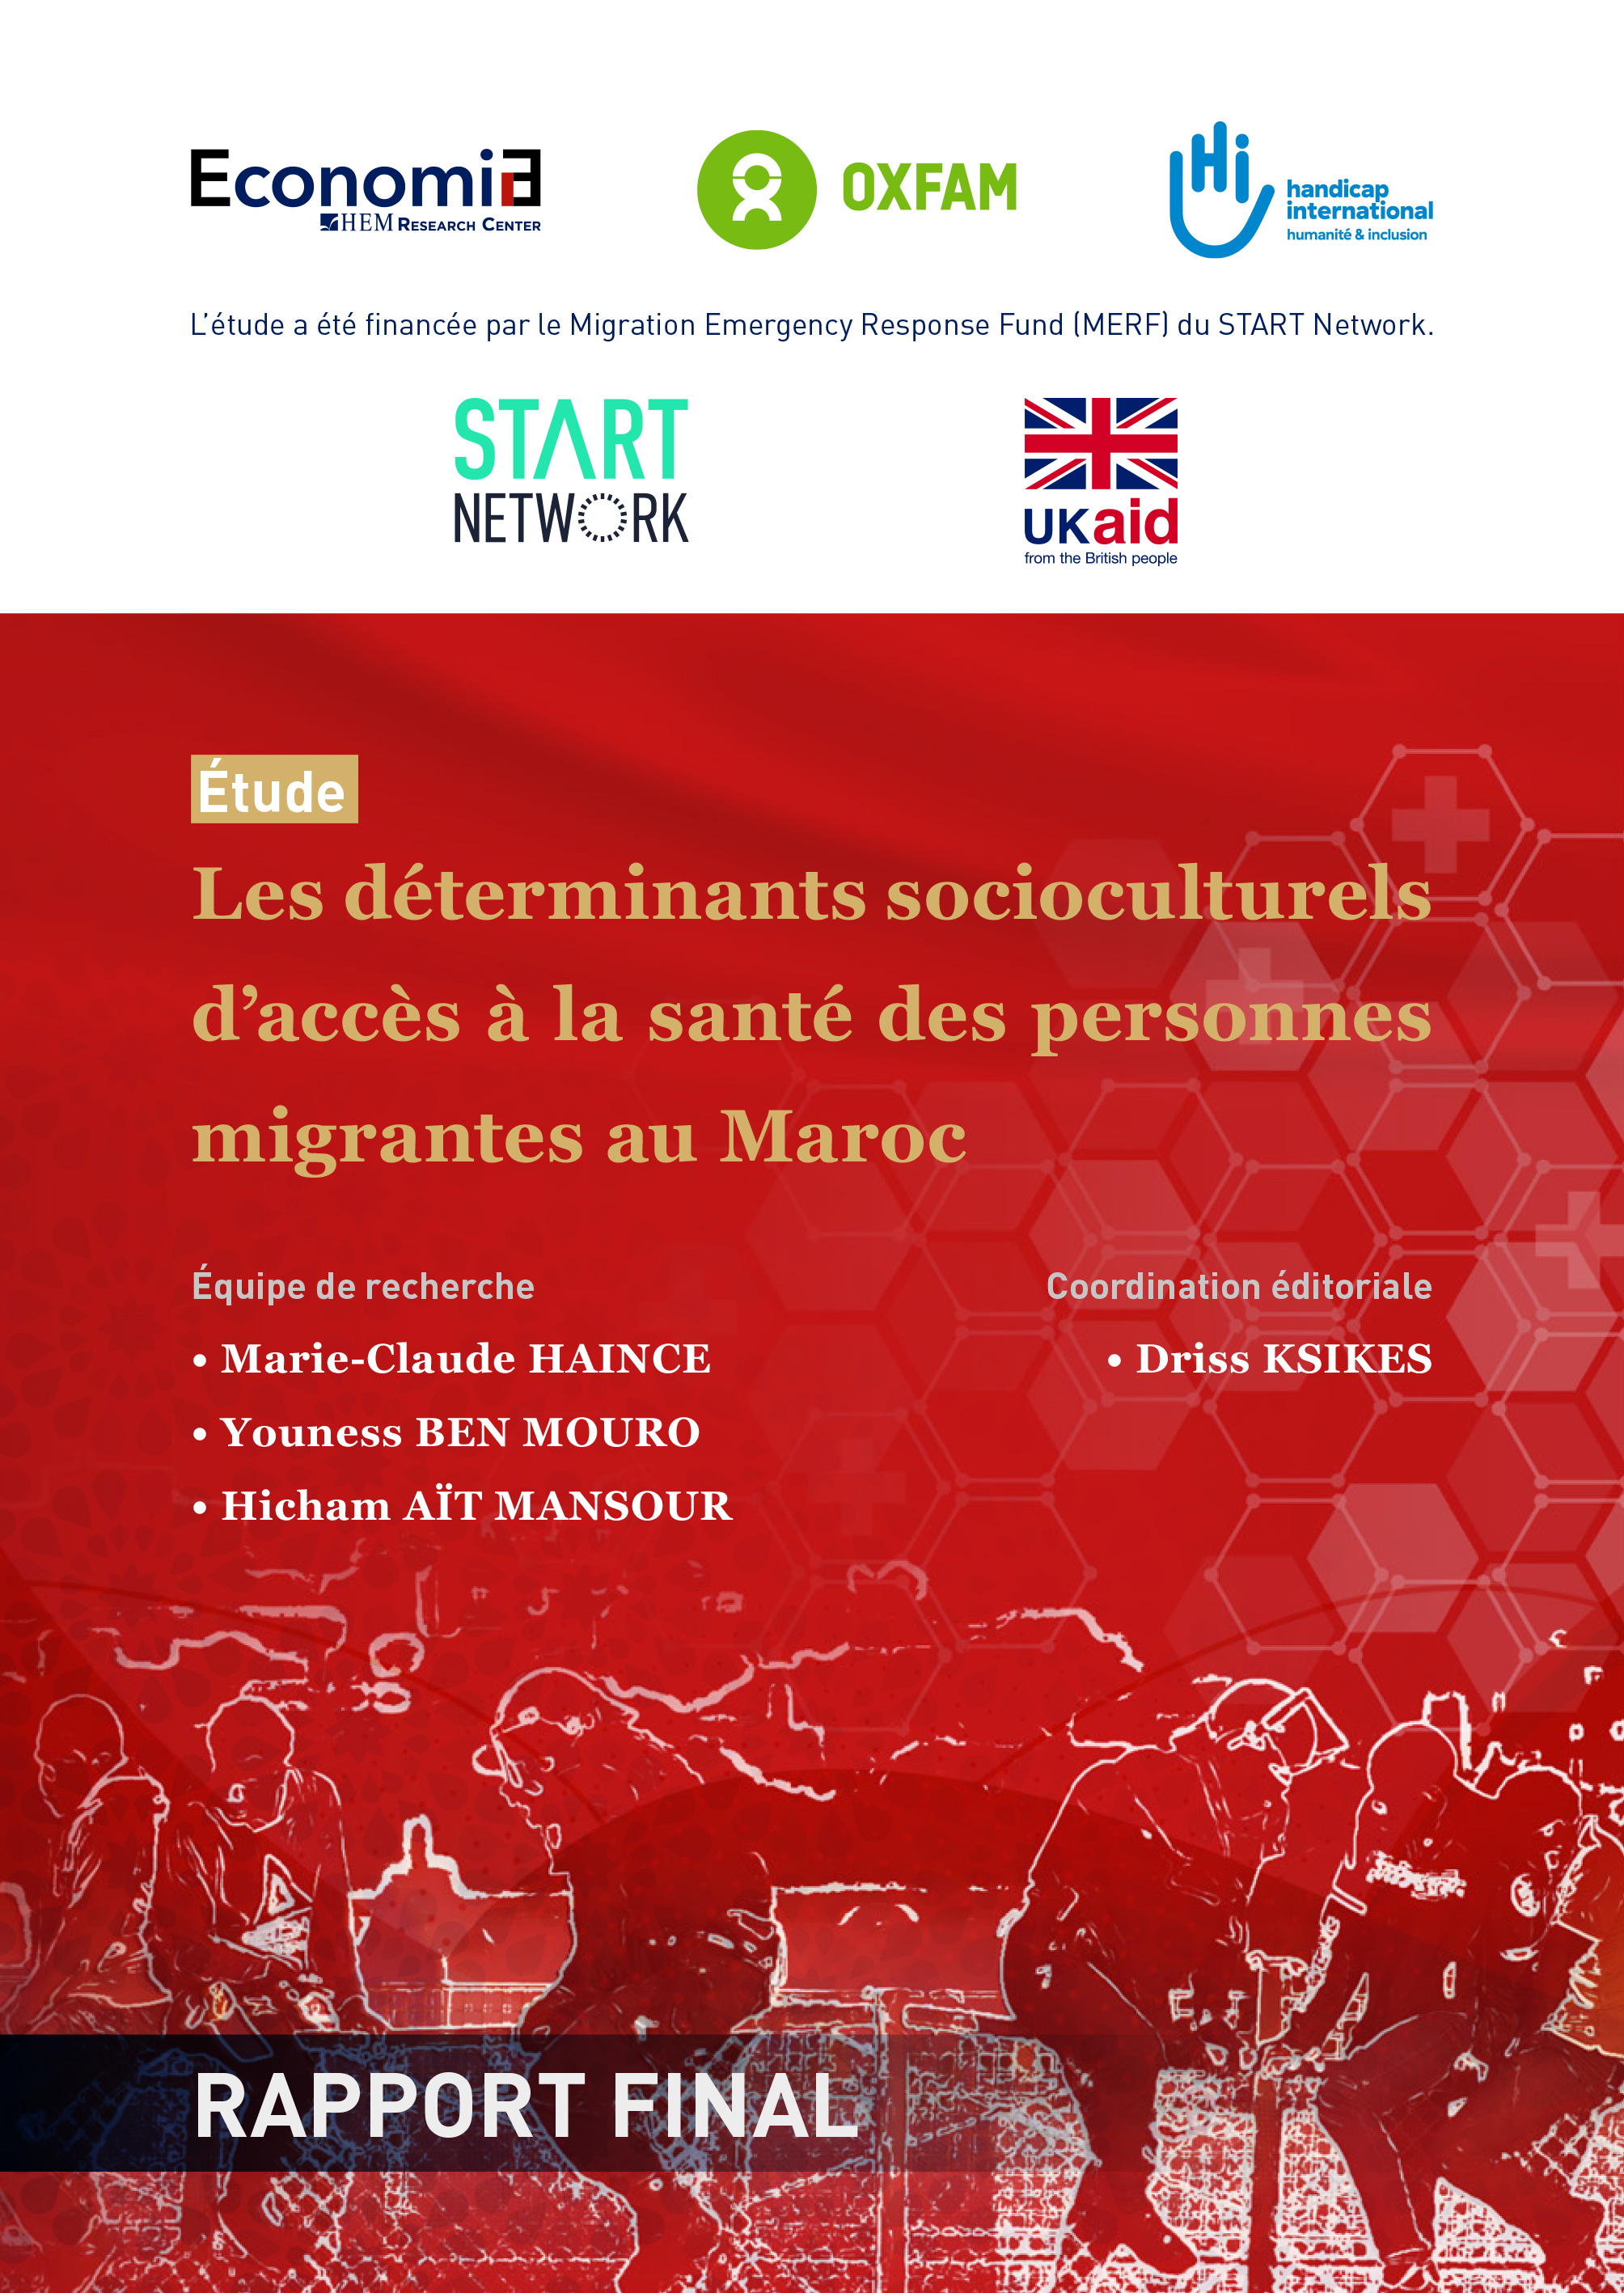  Les déterminants socioculturels d’accès à la santé des personnes migrantes au Maroc